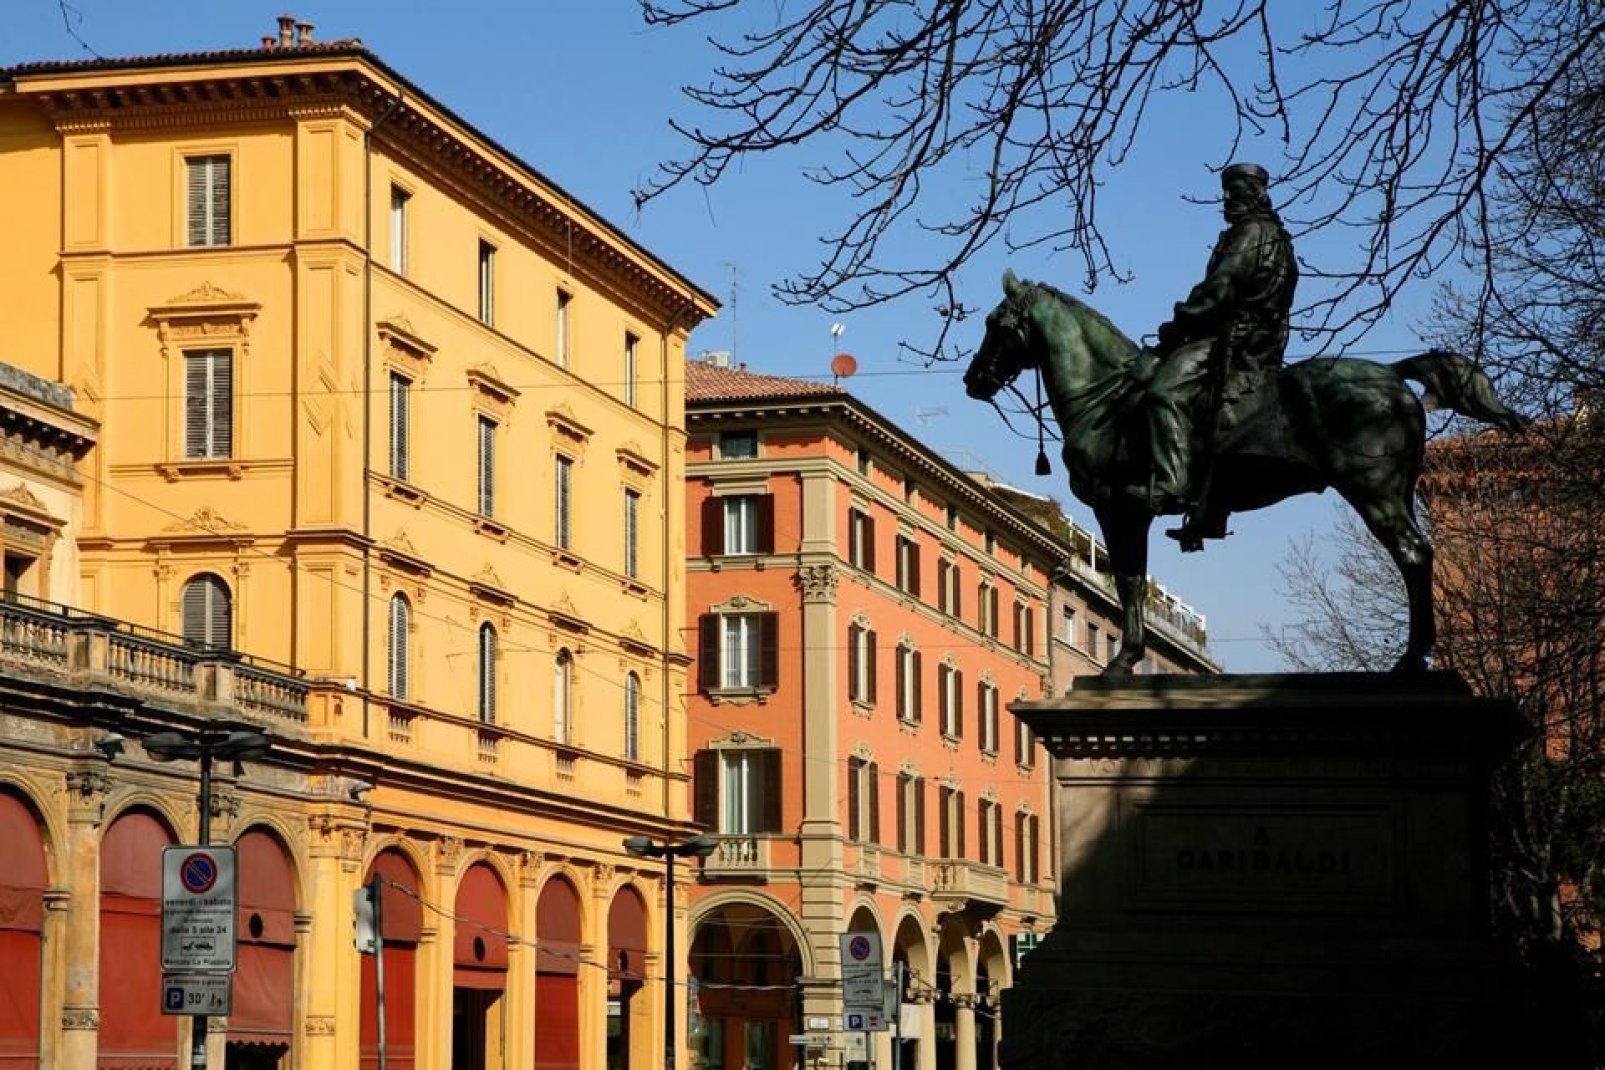 Bologna è chiamata "la Rossa" per il colore rossastro delle sue costruzioni, e anche perché città storicamente di sinistra